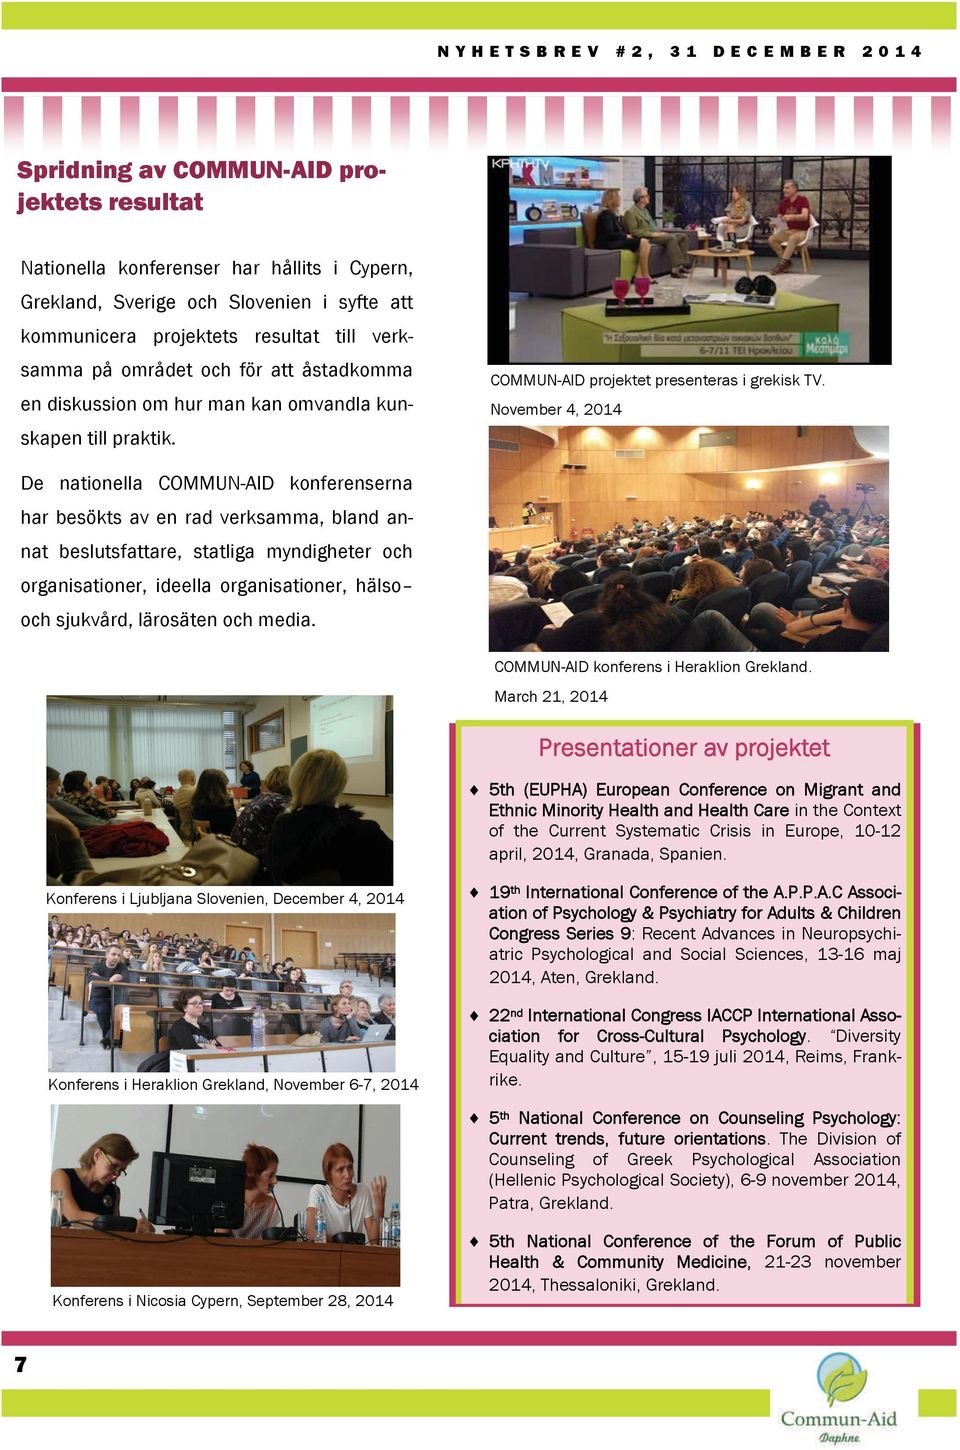 November 4, 2014 De nationella COMMUN-AID konferenserna har besökts av en rad verksamma, bland annat beslutsfattare, statliga myndigheter och organisationer, ideella organisationer, hälso och